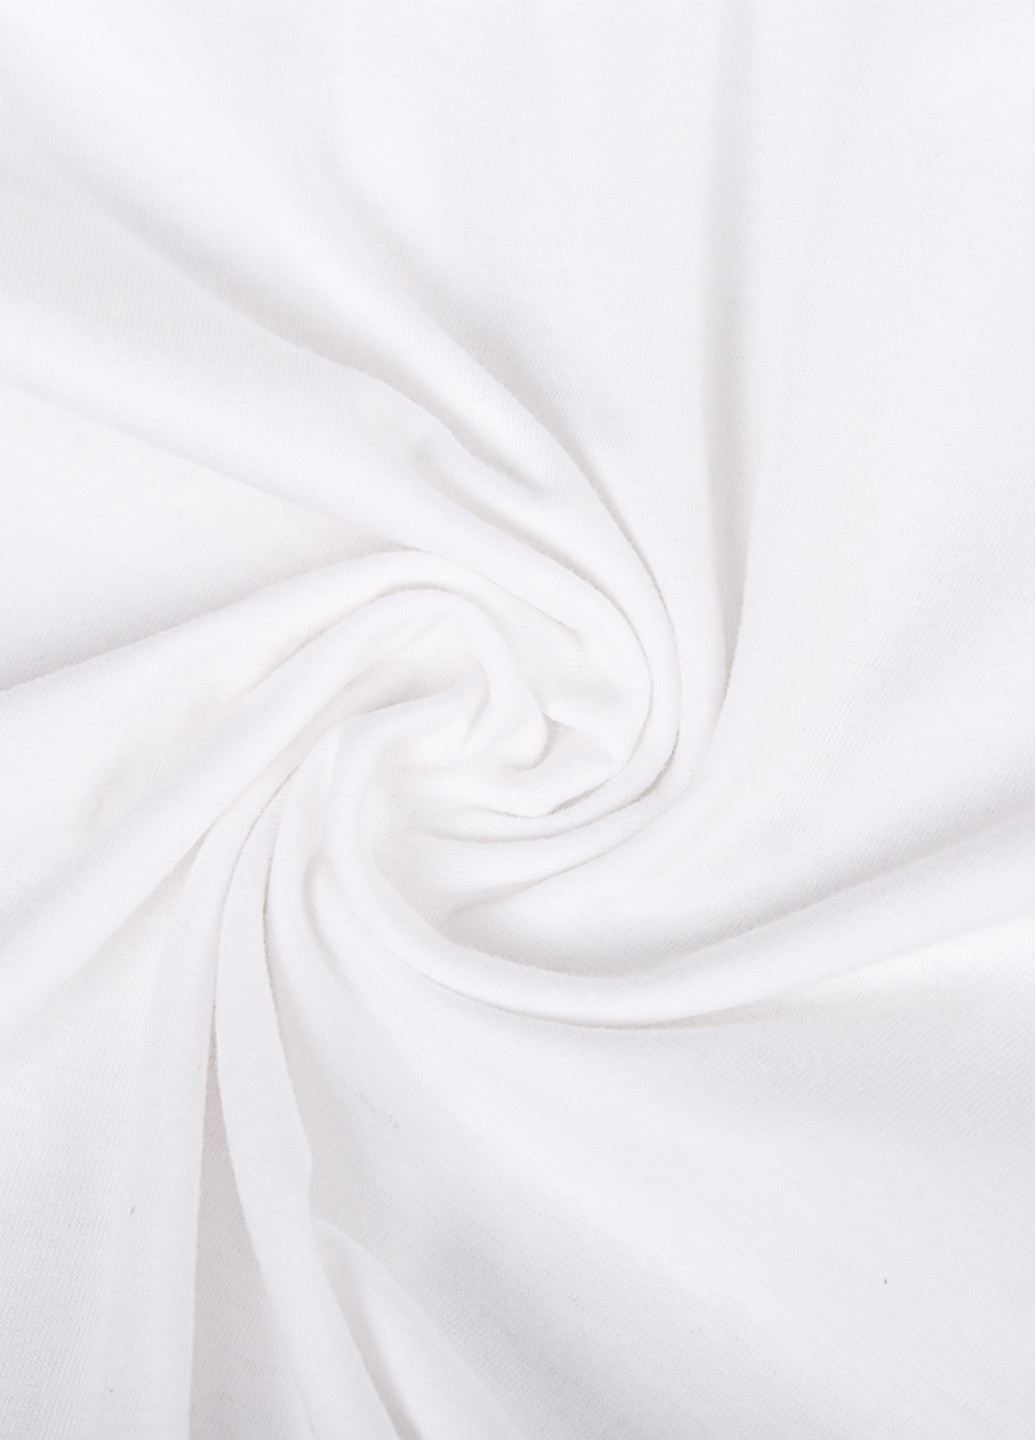 Біла демісезонна футболка дитяча билли айлиш (billie eilish) білий (9224-1211) 164 см MobiPrint